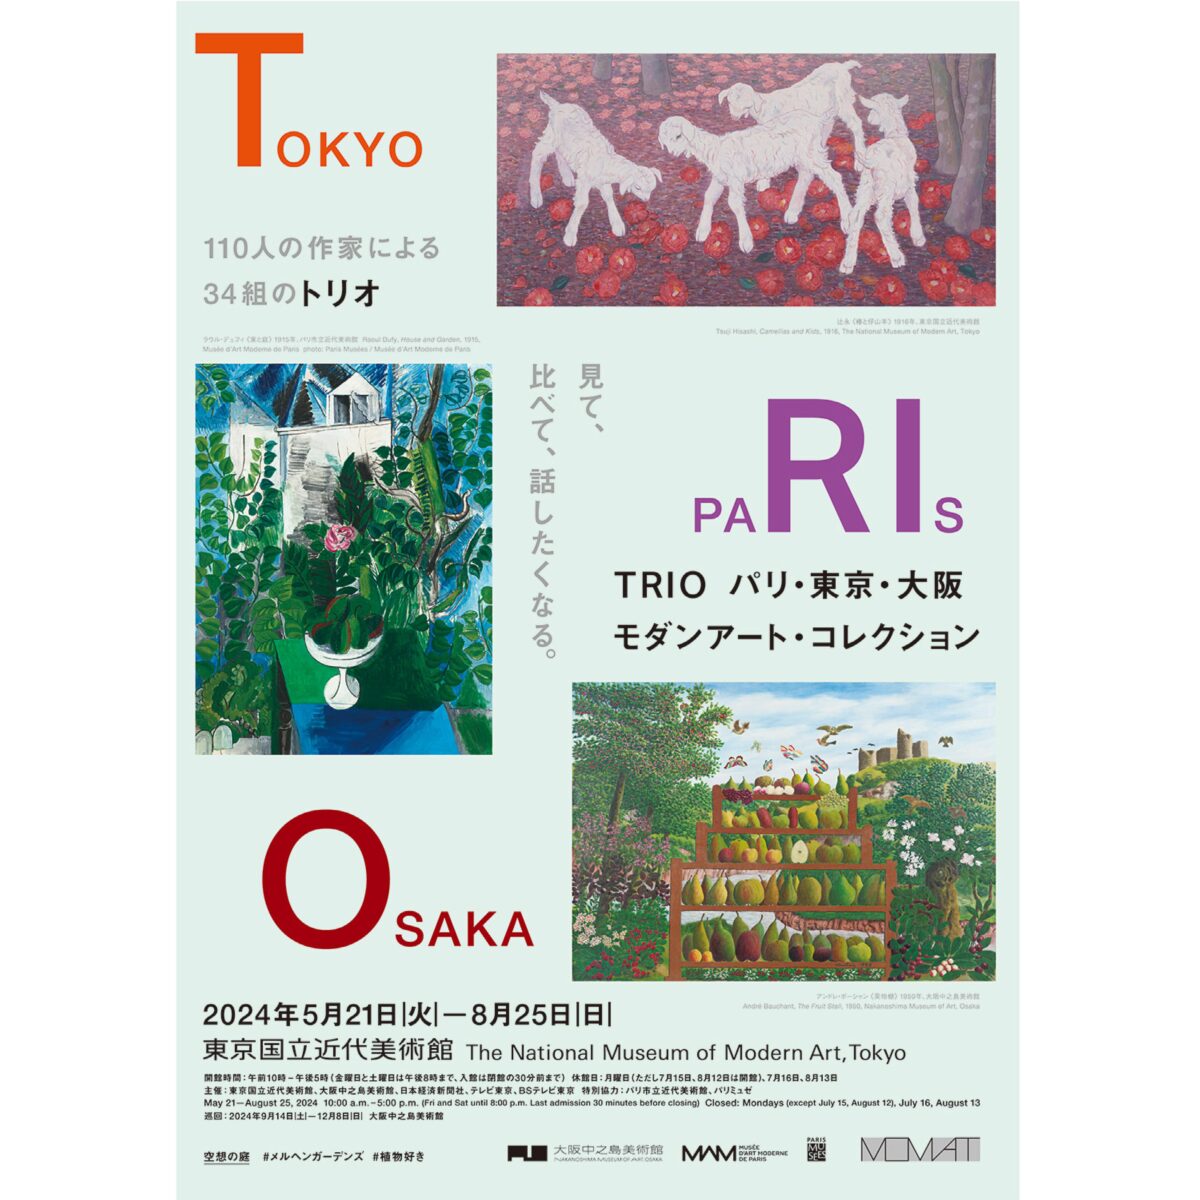 パリ、東京、大阪—3都市の美術館のコレクションが集結。TRIO展のチケットをプレゼント...